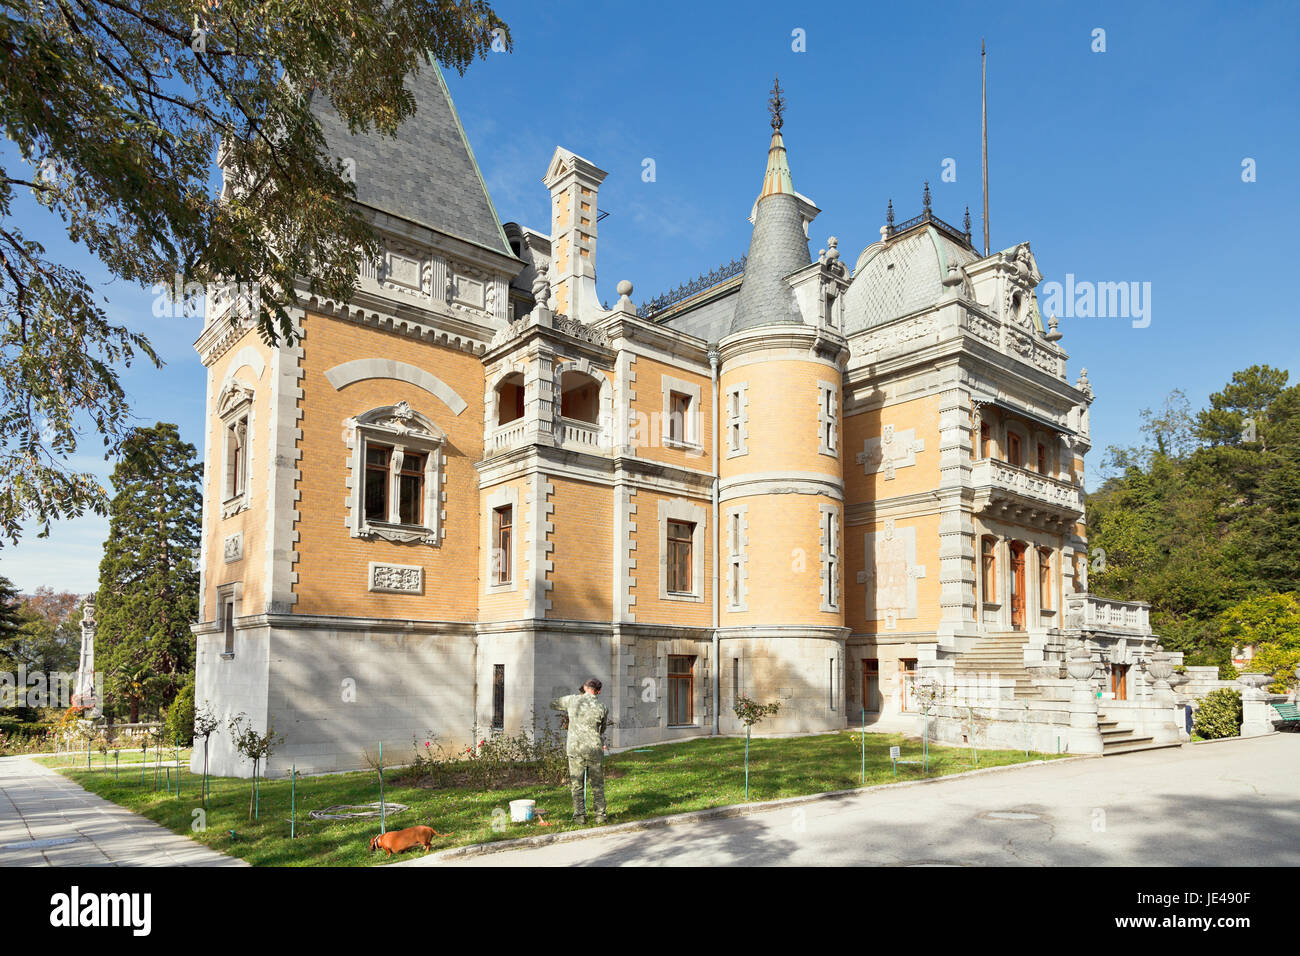 YALTA, RUSSIE - 3 octobre, 2014 : Masandra Palais de l'empereur Alexandre III en Crimée. Le palais fut construite dans les années 1881-1902. Banque D'Images